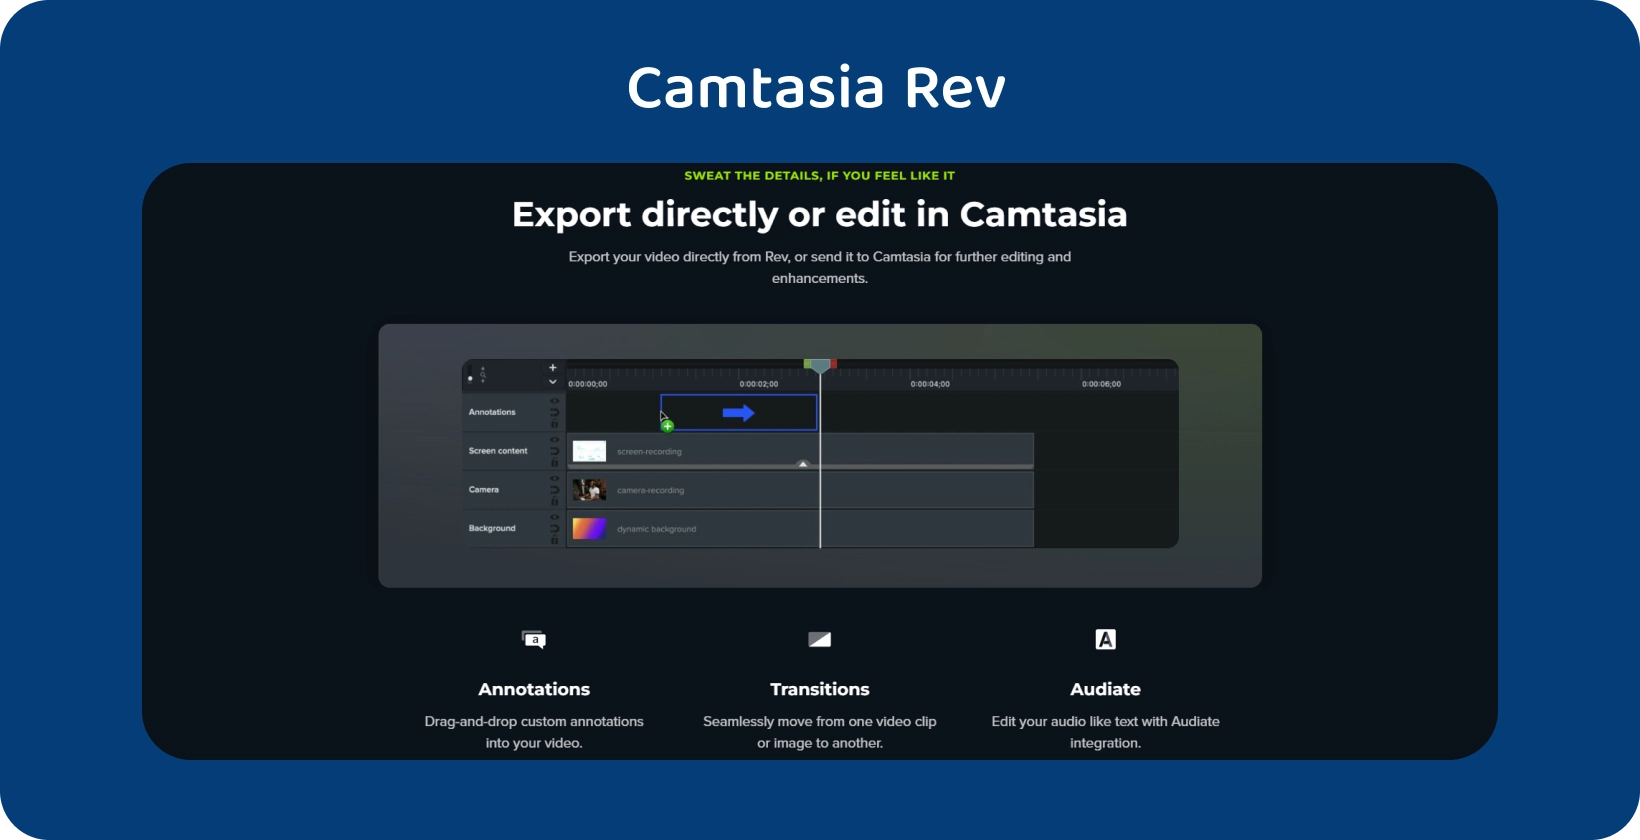 Интерфейс Camtasia с выделенной опцией экспорта субтитров указывает на оптимизированный рабочий процесс субтитров.